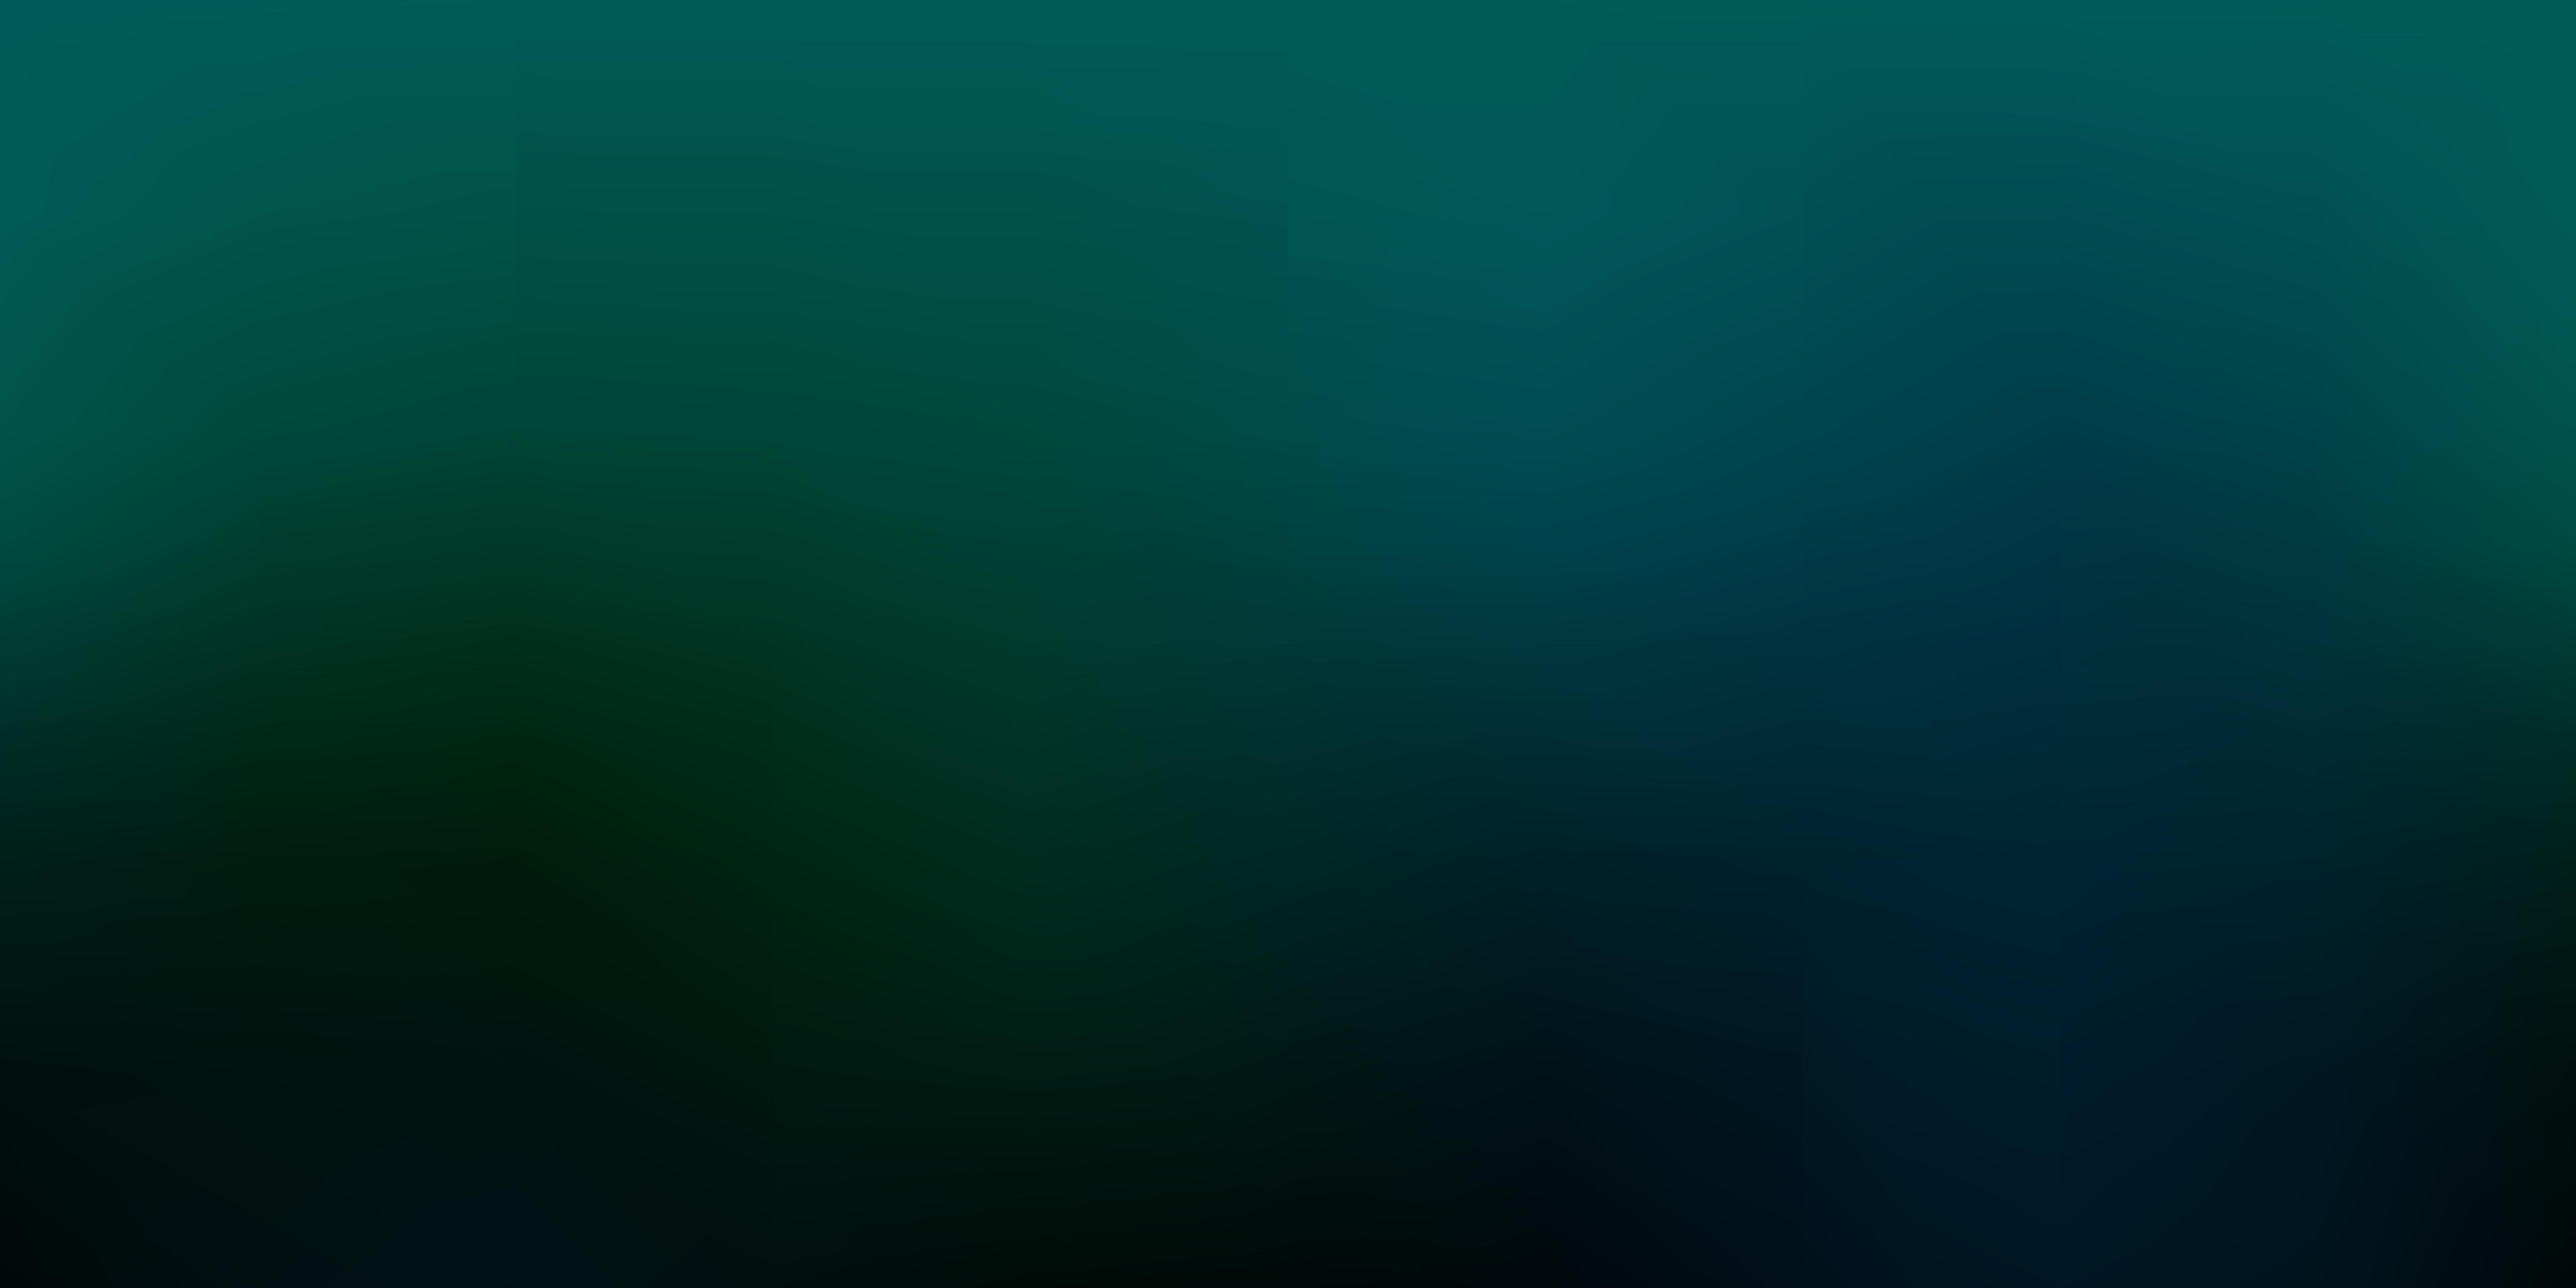 Dark Green vector blur background. 1877555 Vector Art at Vecteezy